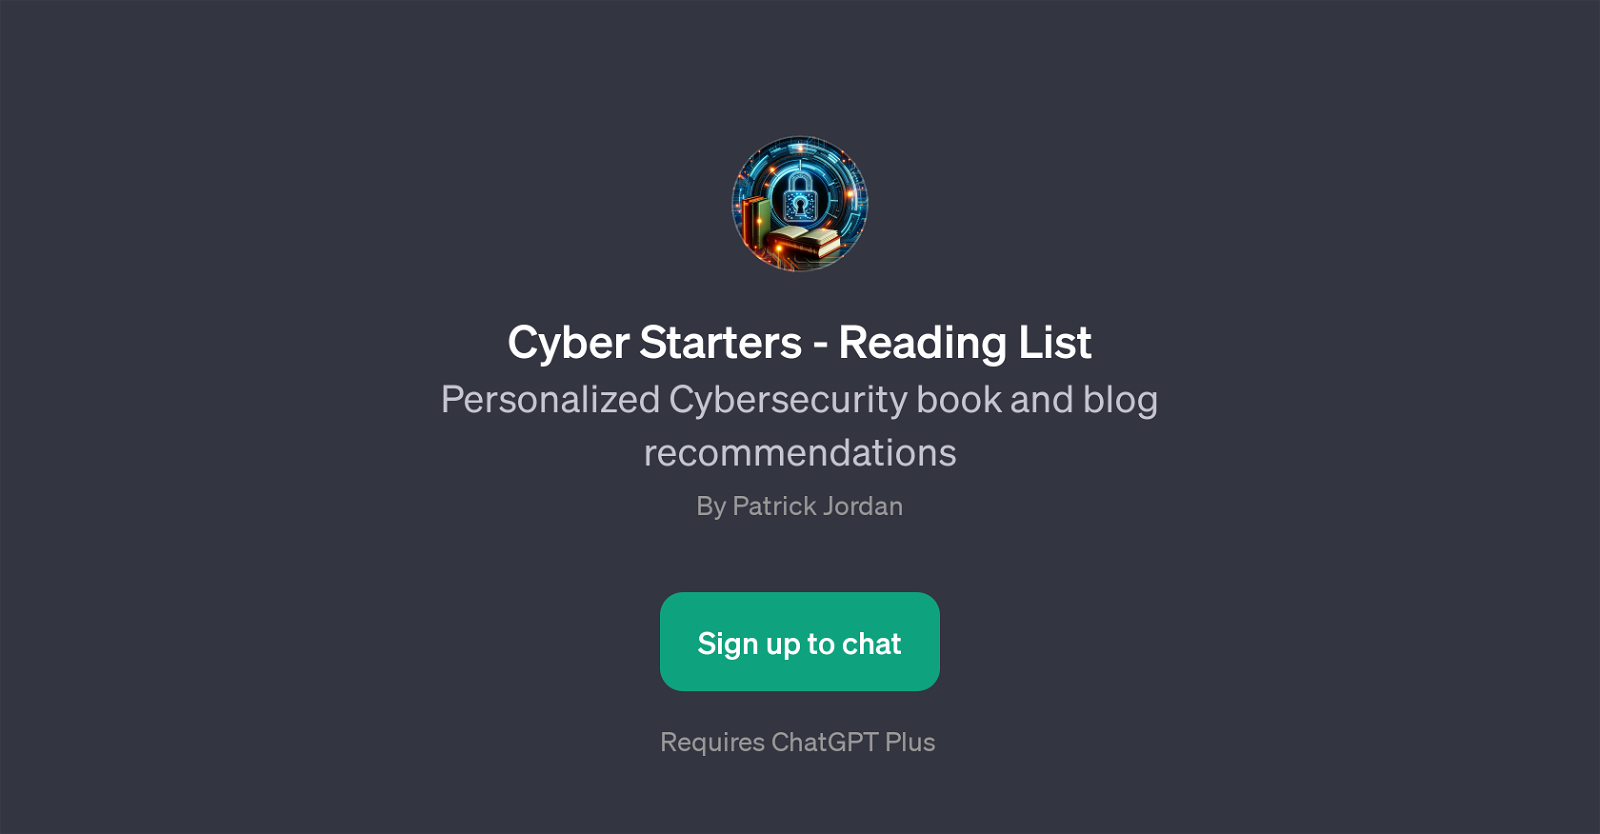 Cyber Starters - Reading List website